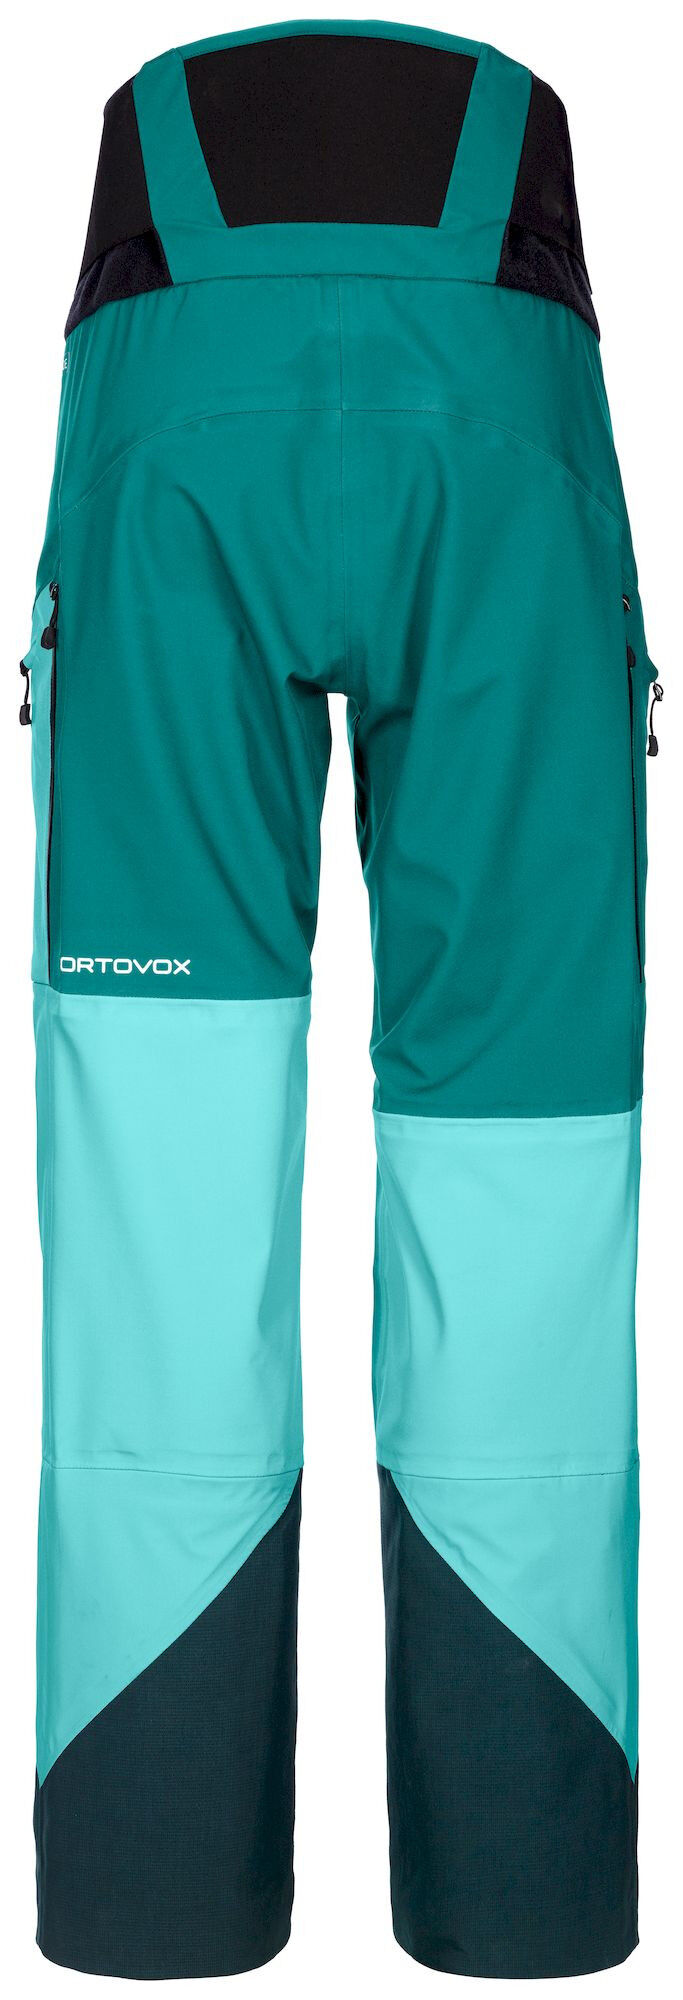 Ortovox 3L Guardian Shell Pants - Ski pants - Women's